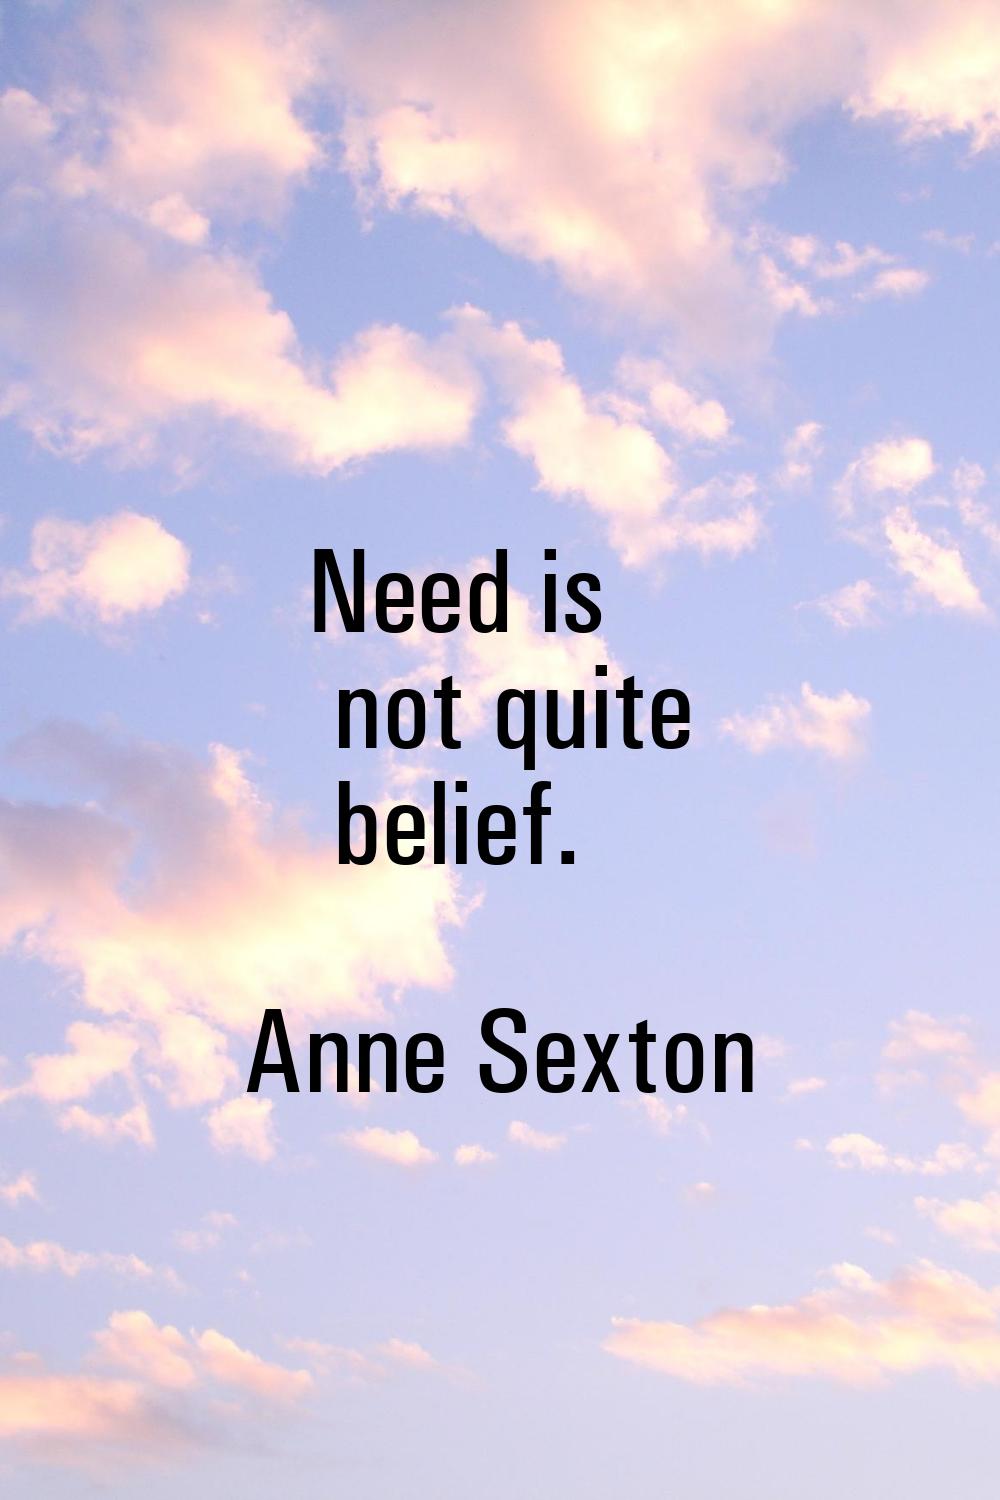 Need is not quite belief.